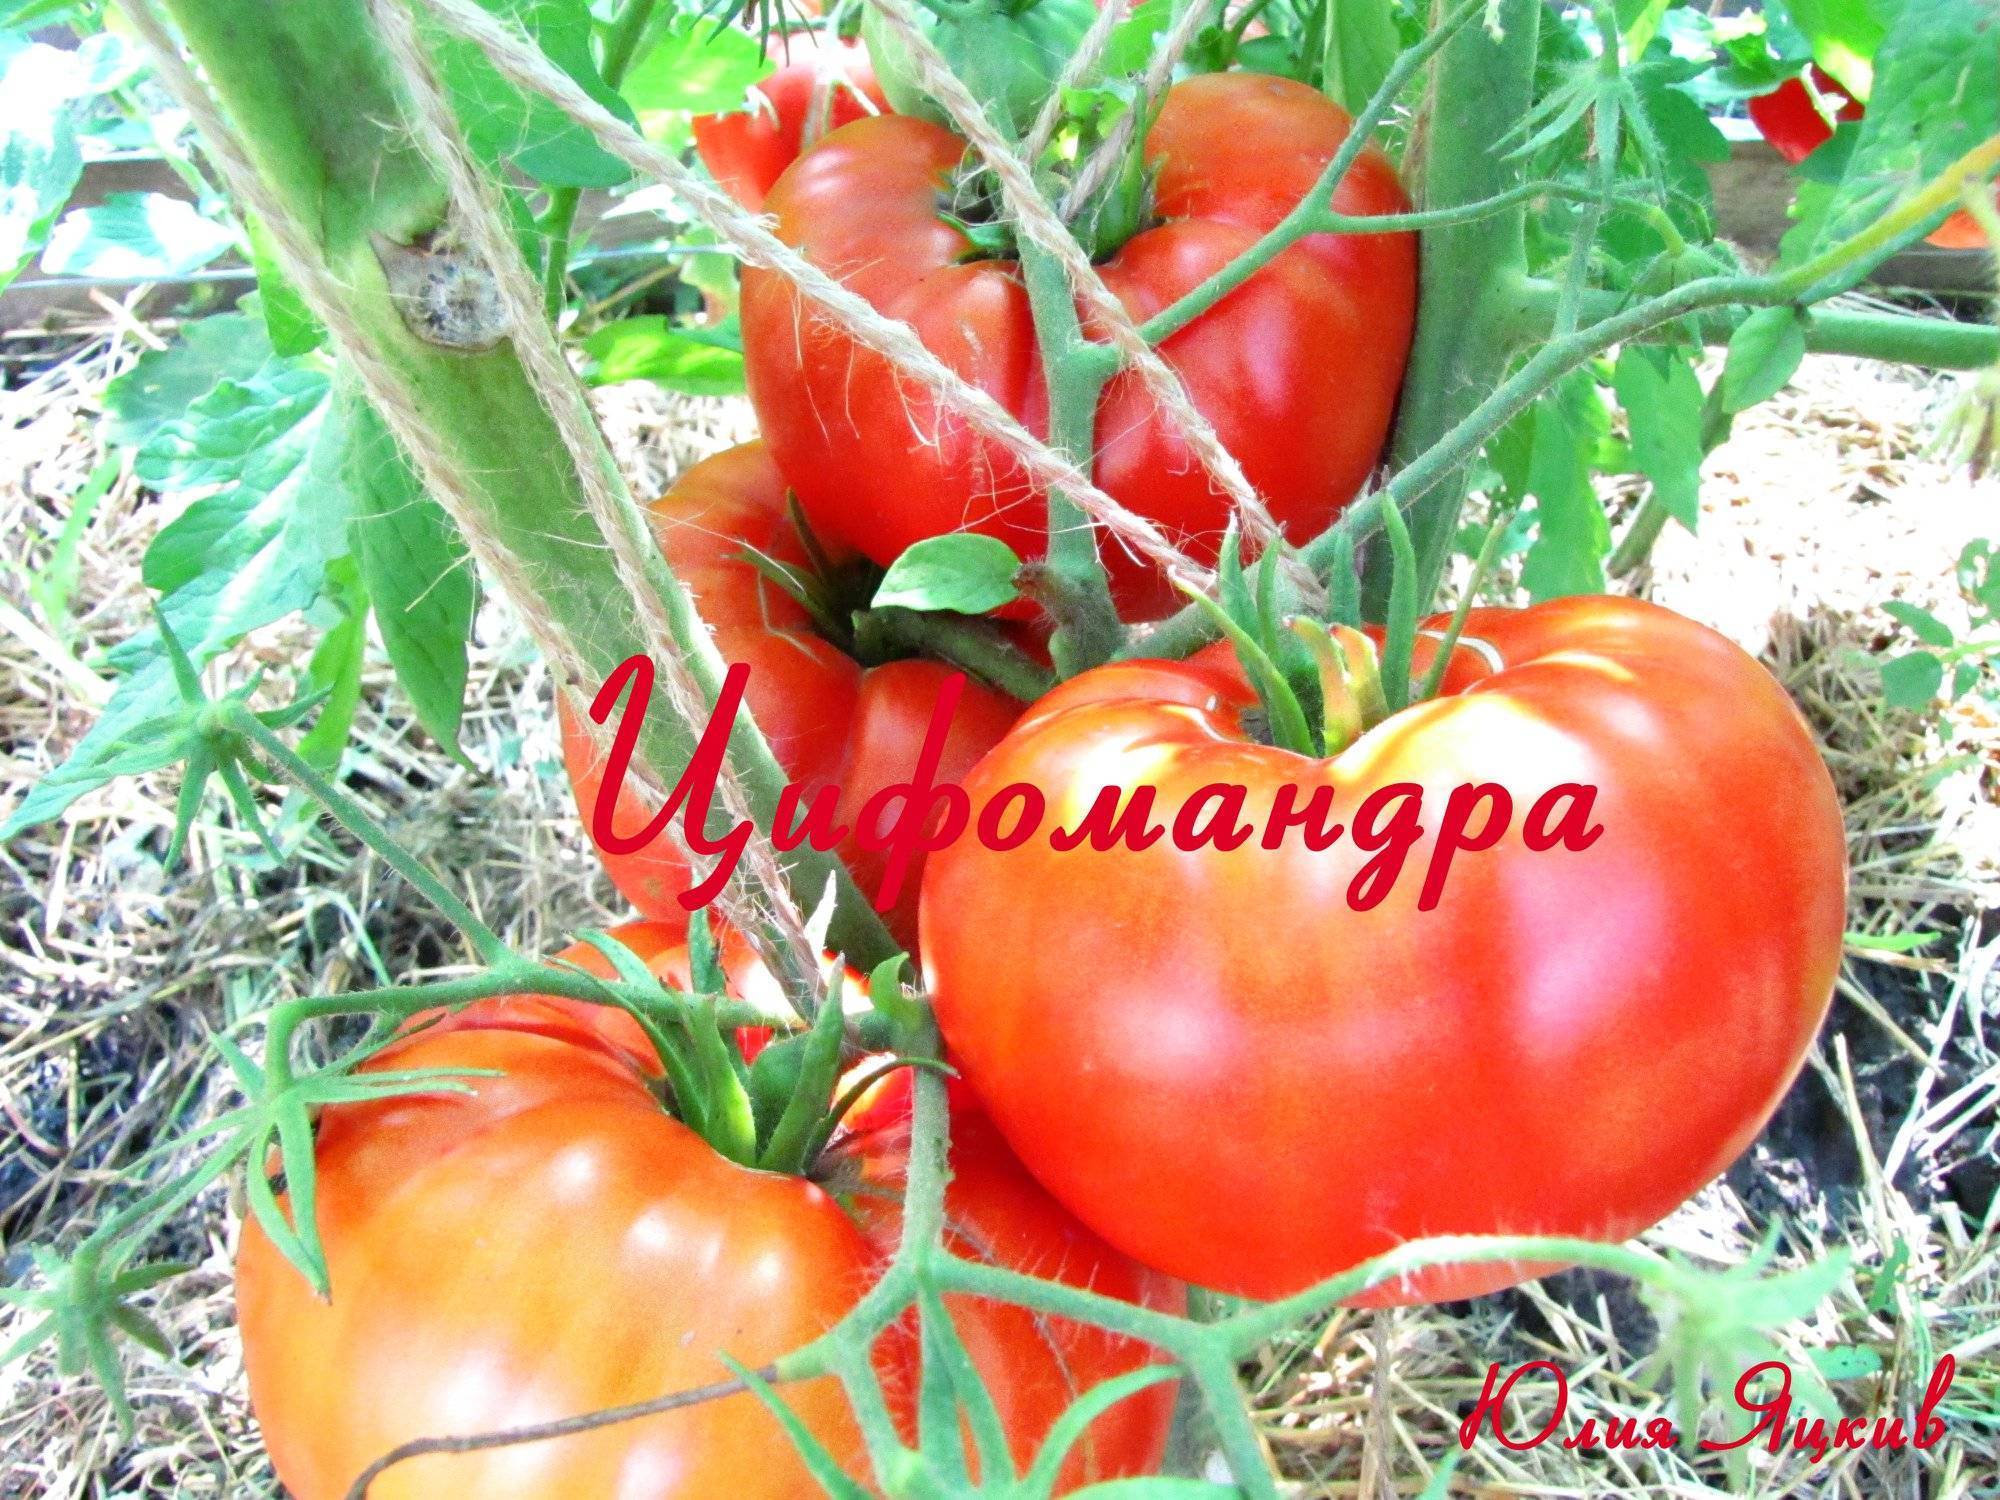 Что такое цифомандра: сортовой помидор или экзотическая ягода? описание томатного дерева, особенности его выращивания в рф